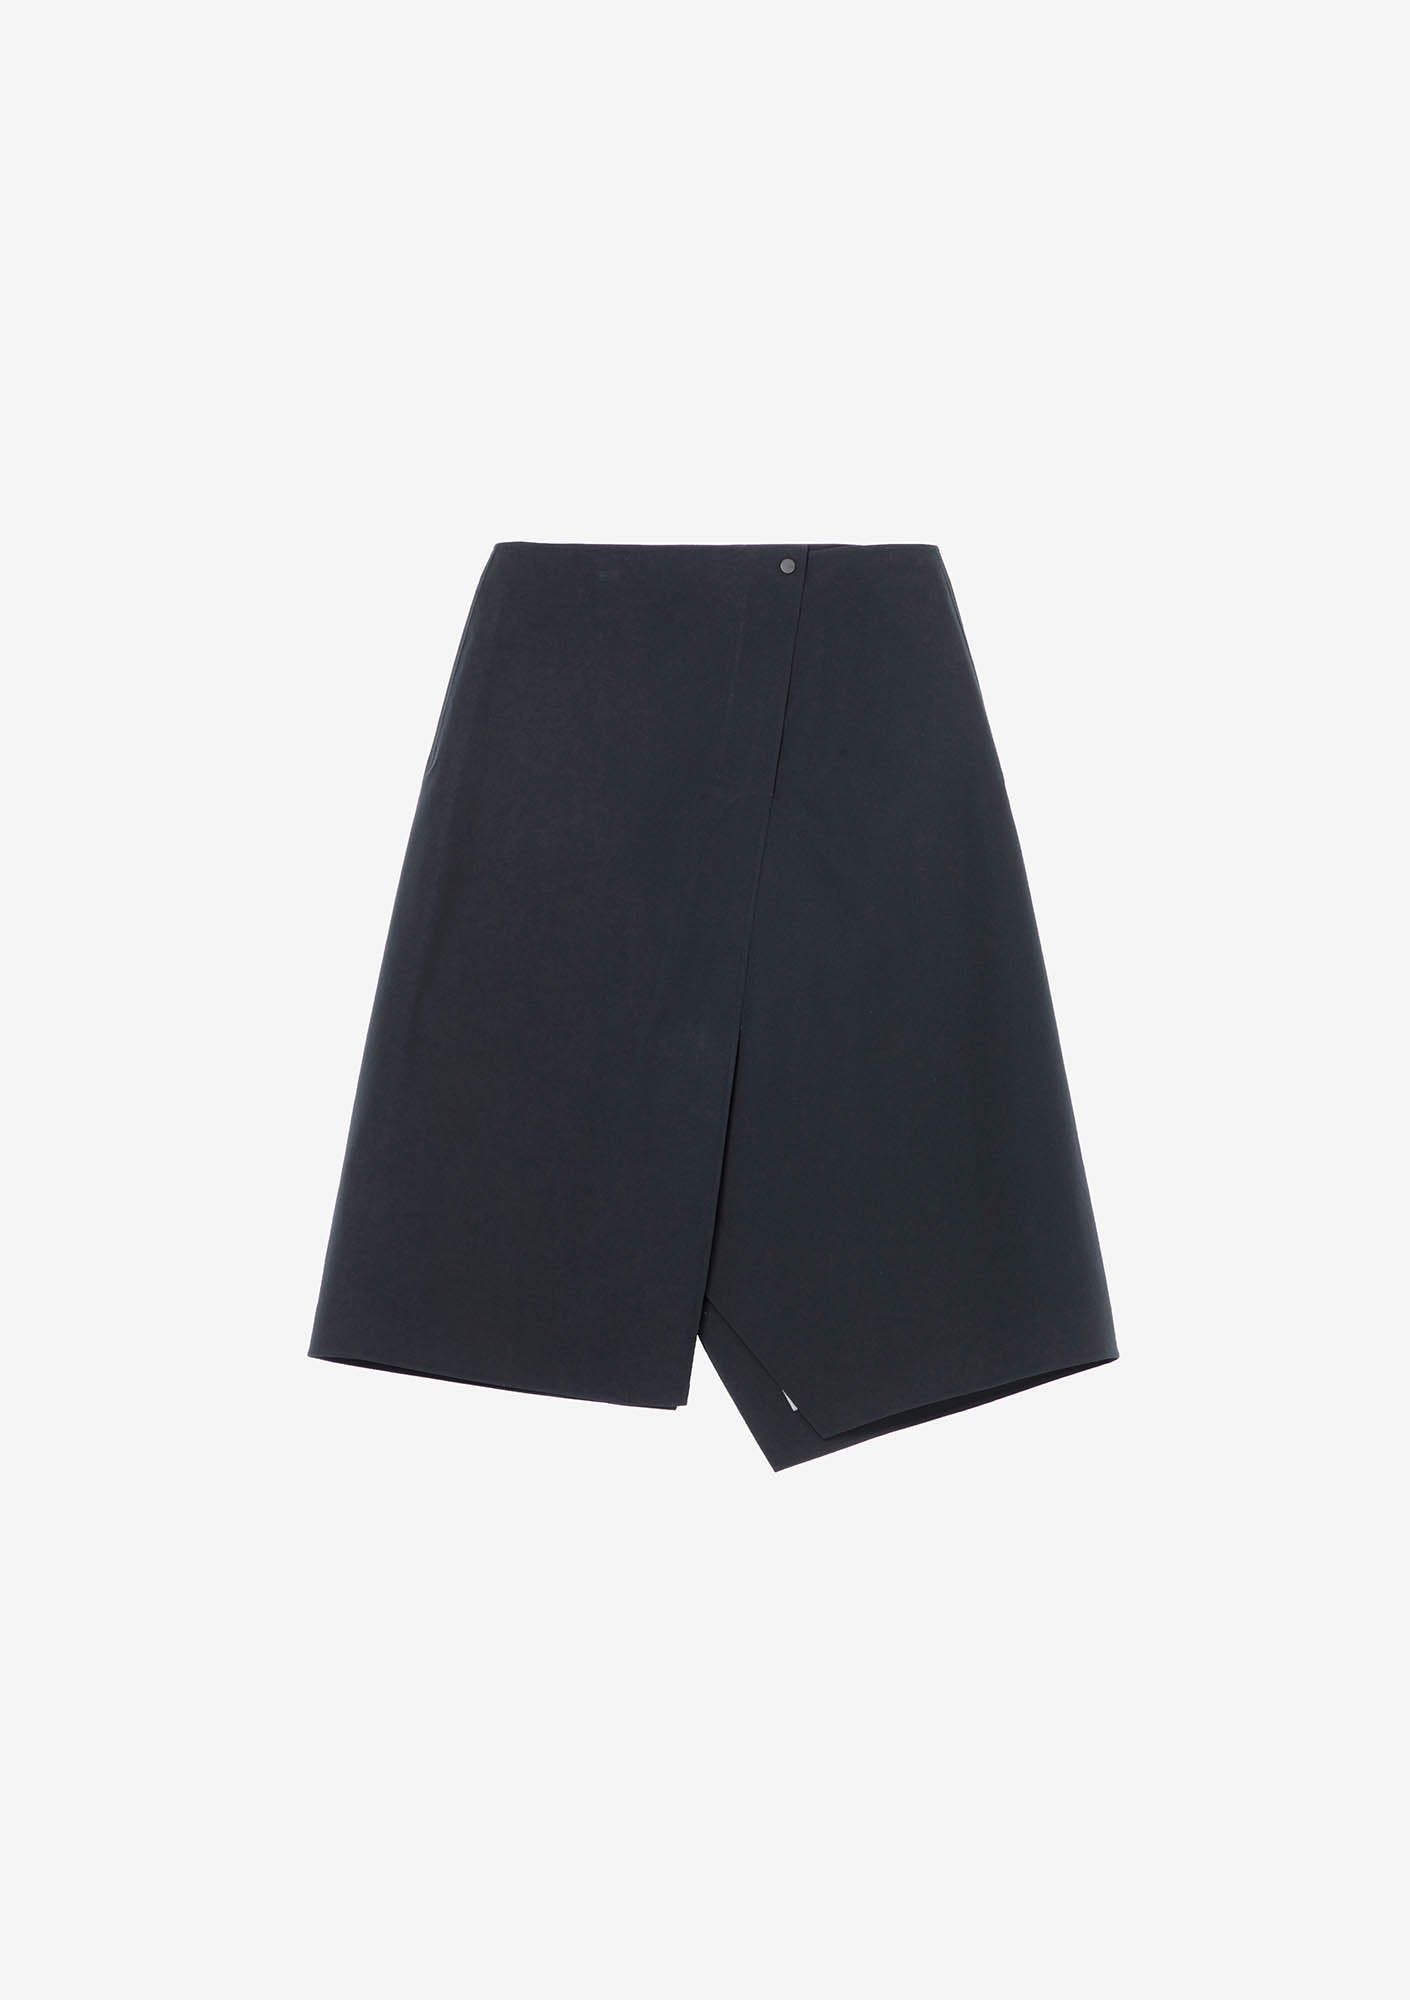 BLERIOT Waterproof Skirt Rw166-1